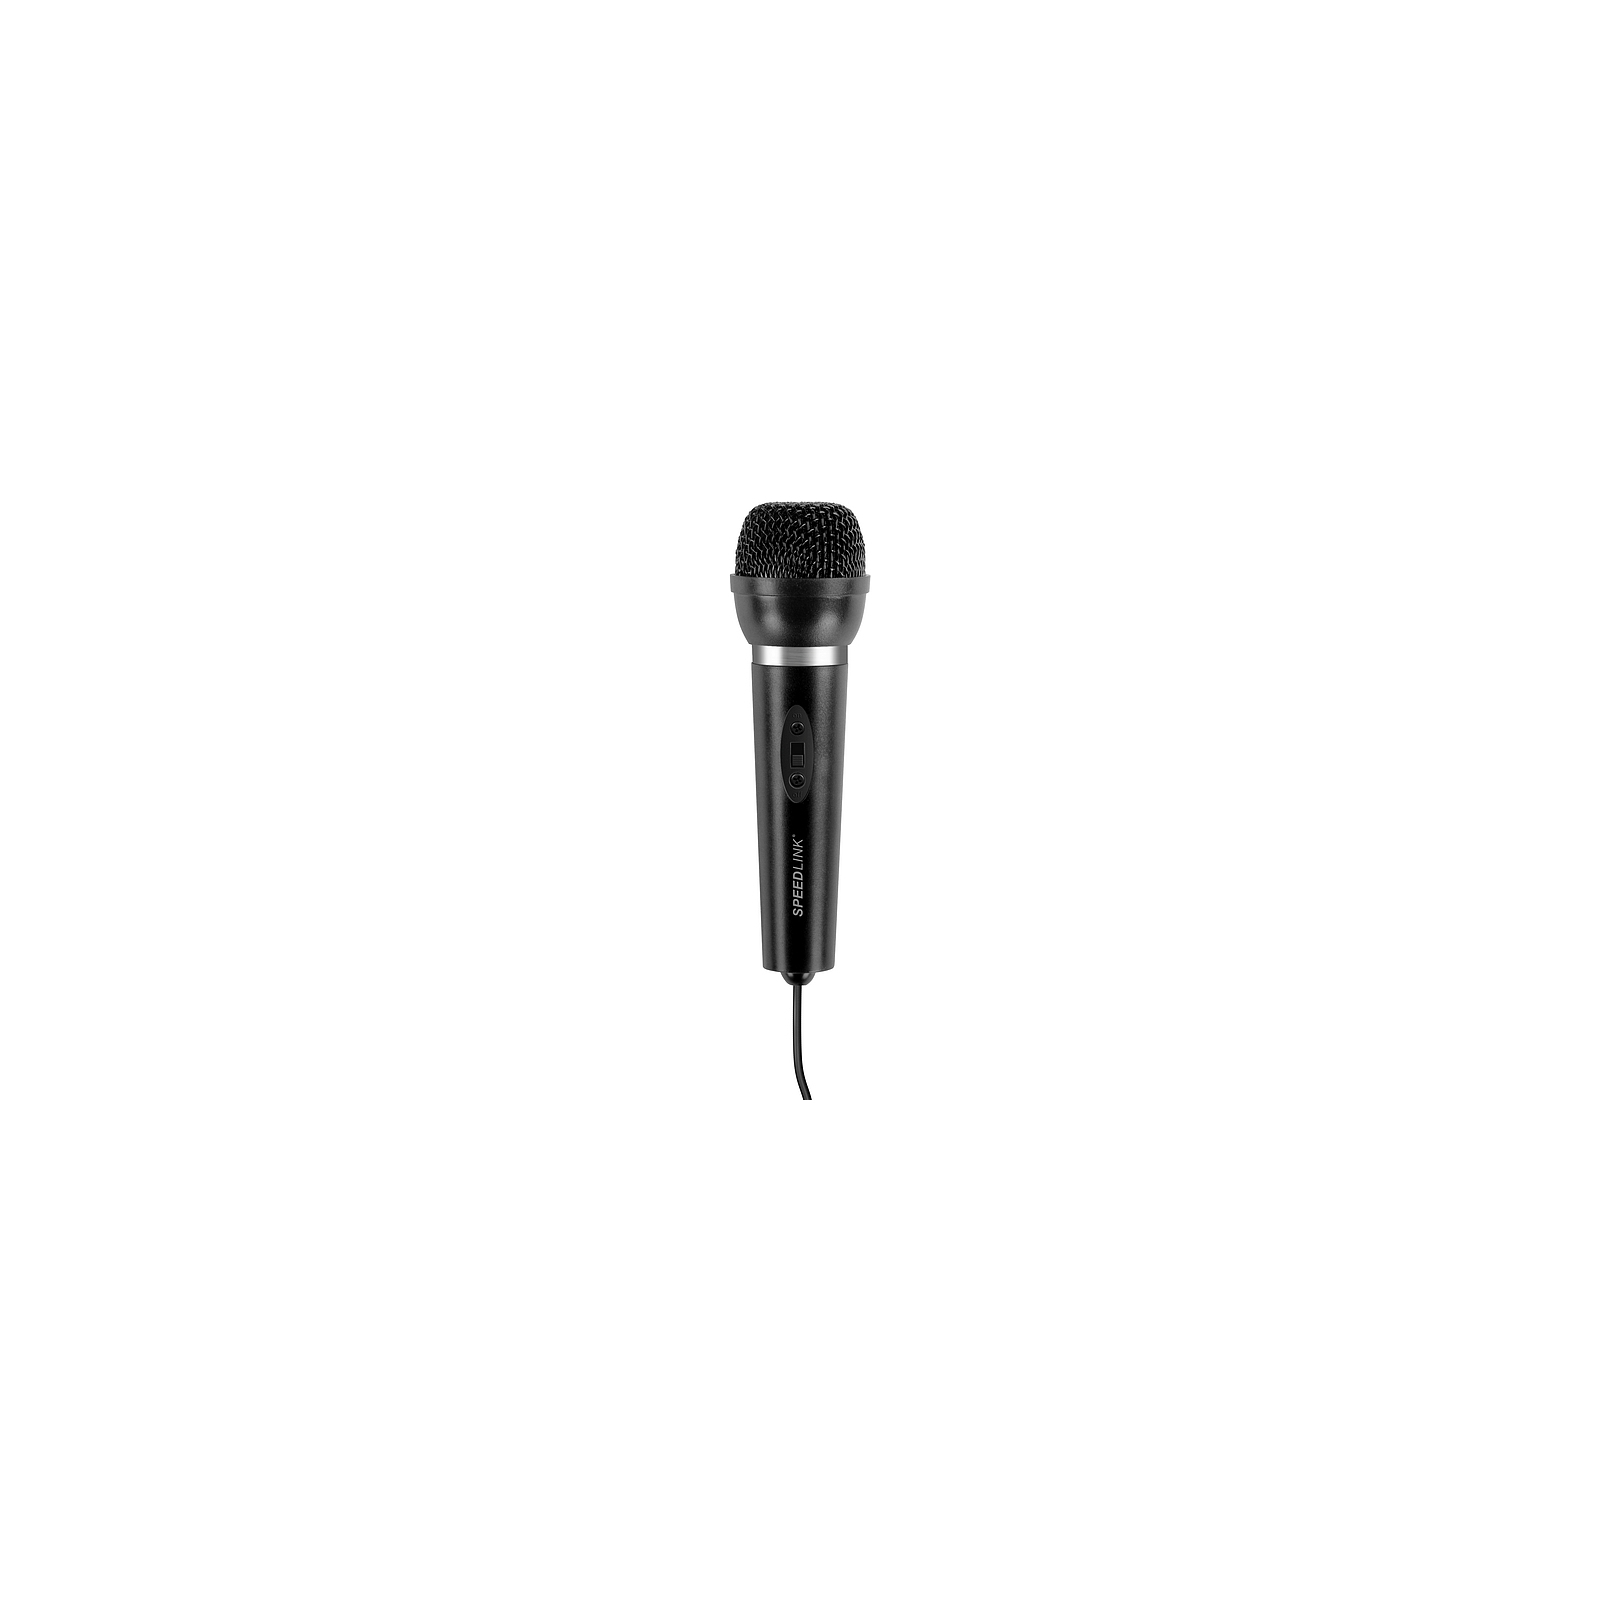 Микрофон Speedlink CAPO Desk and Hand Microphone Black (SL-8703-BK) изображение 3